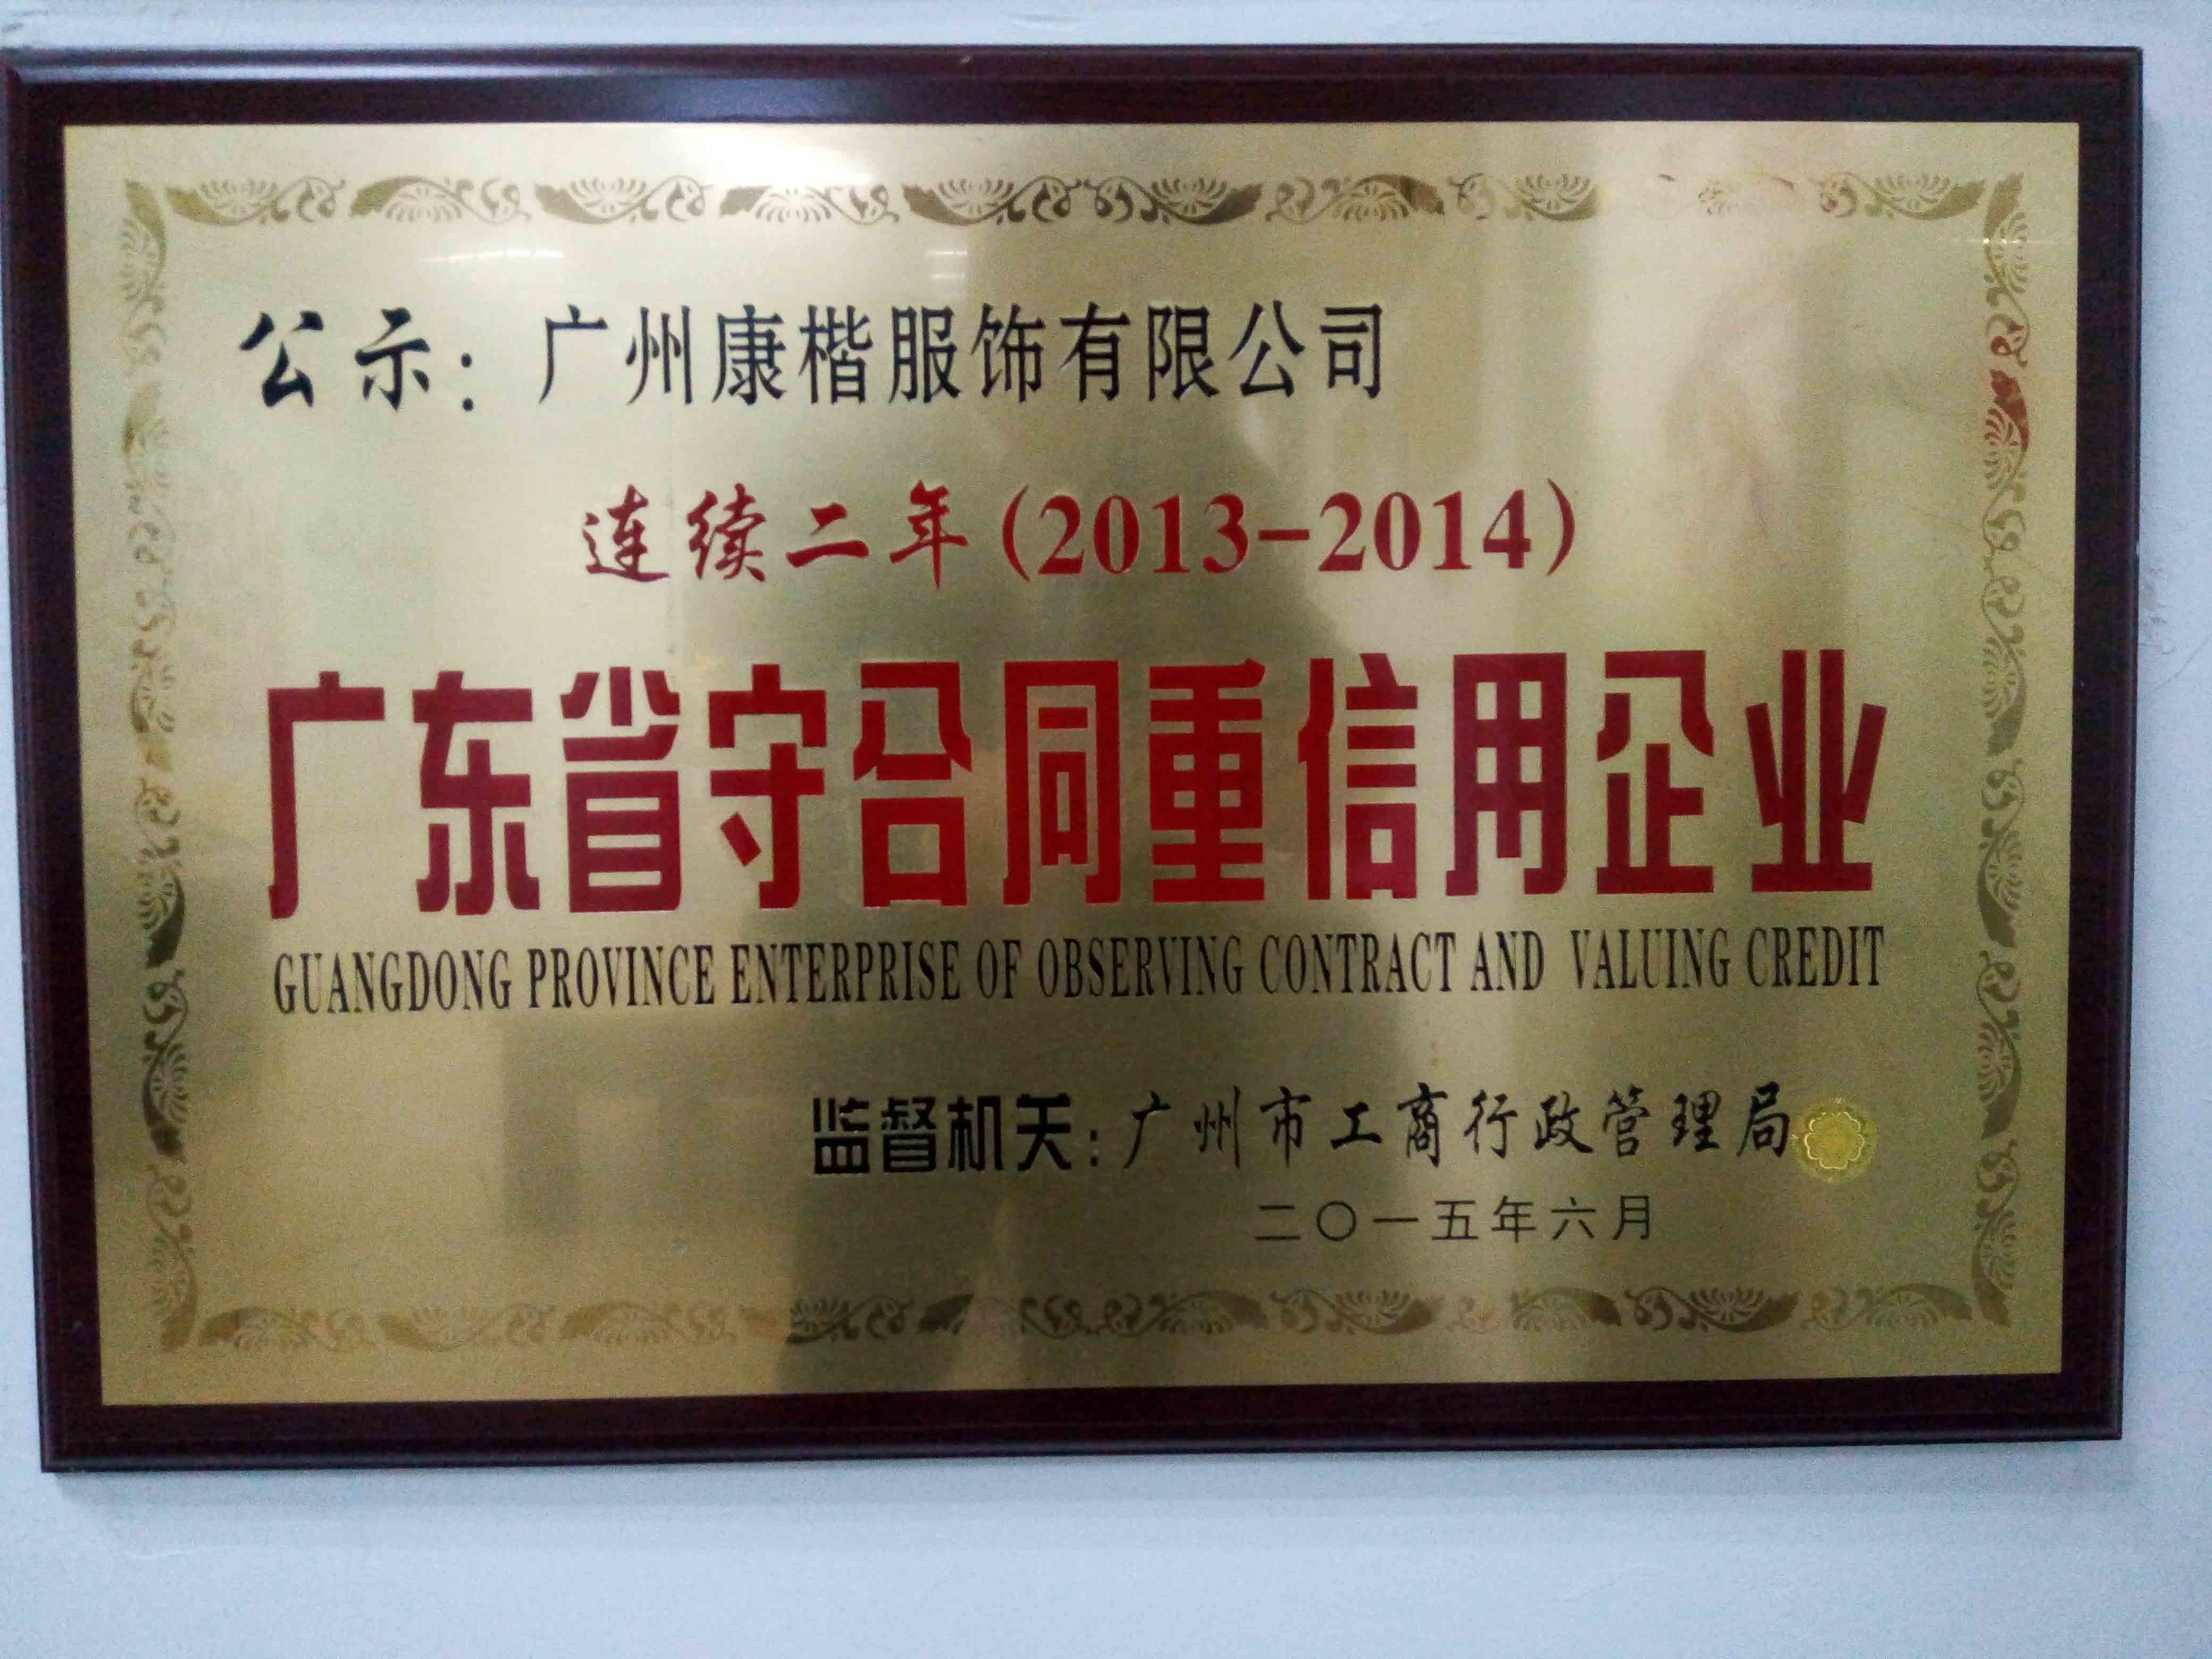 Guangzhou Kangkai Apparel,Co.,Ltd Certifications